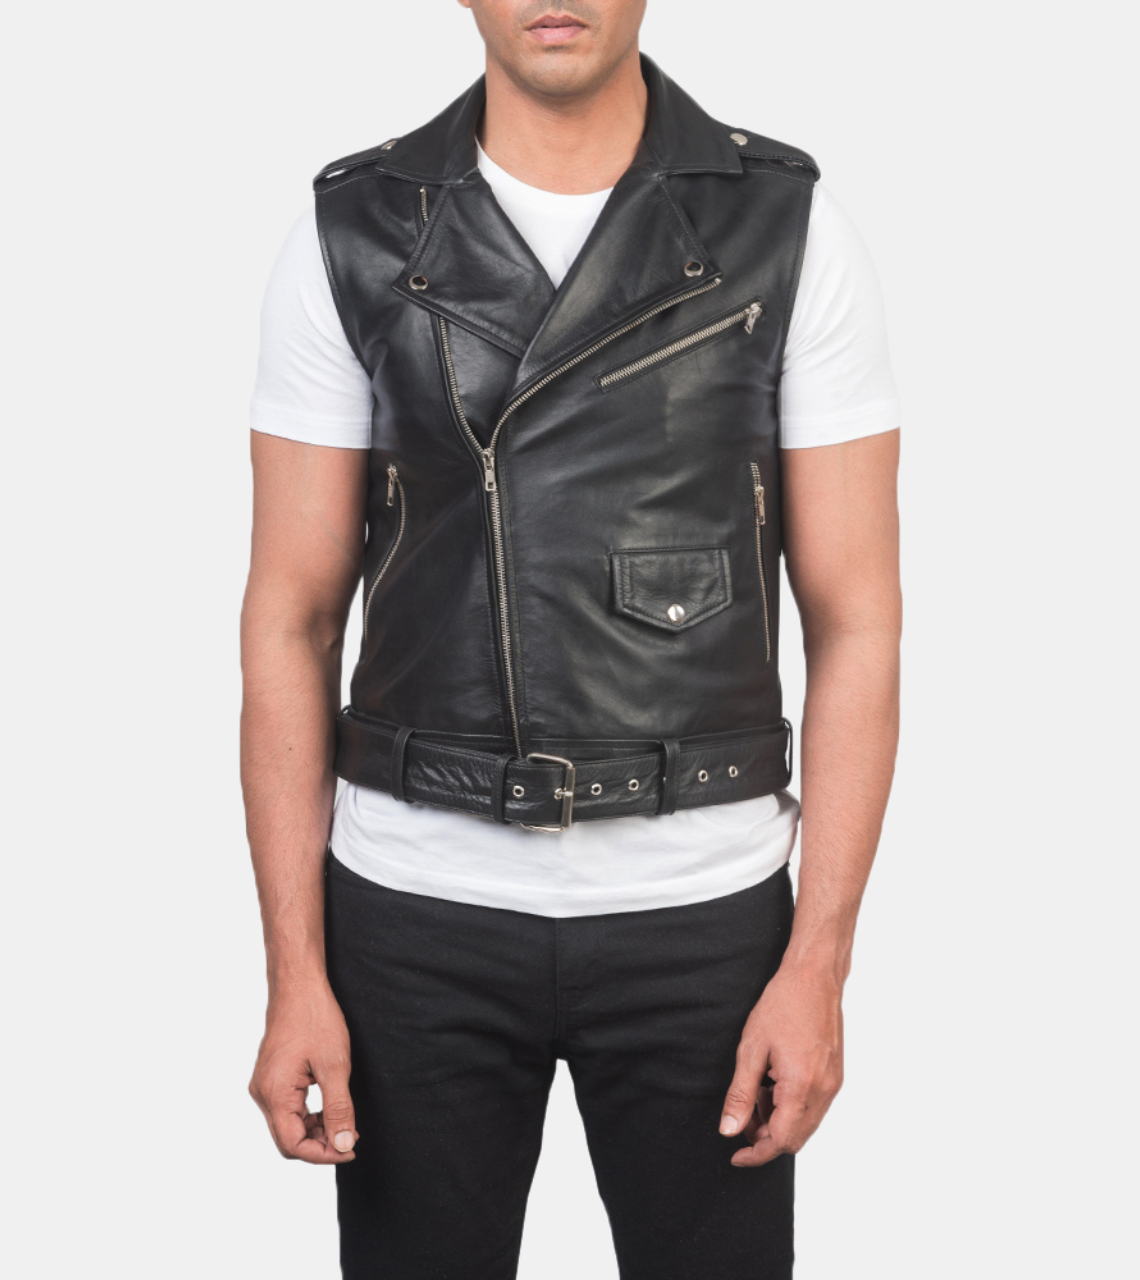 Archer Men's Black Biker's Leather Vest